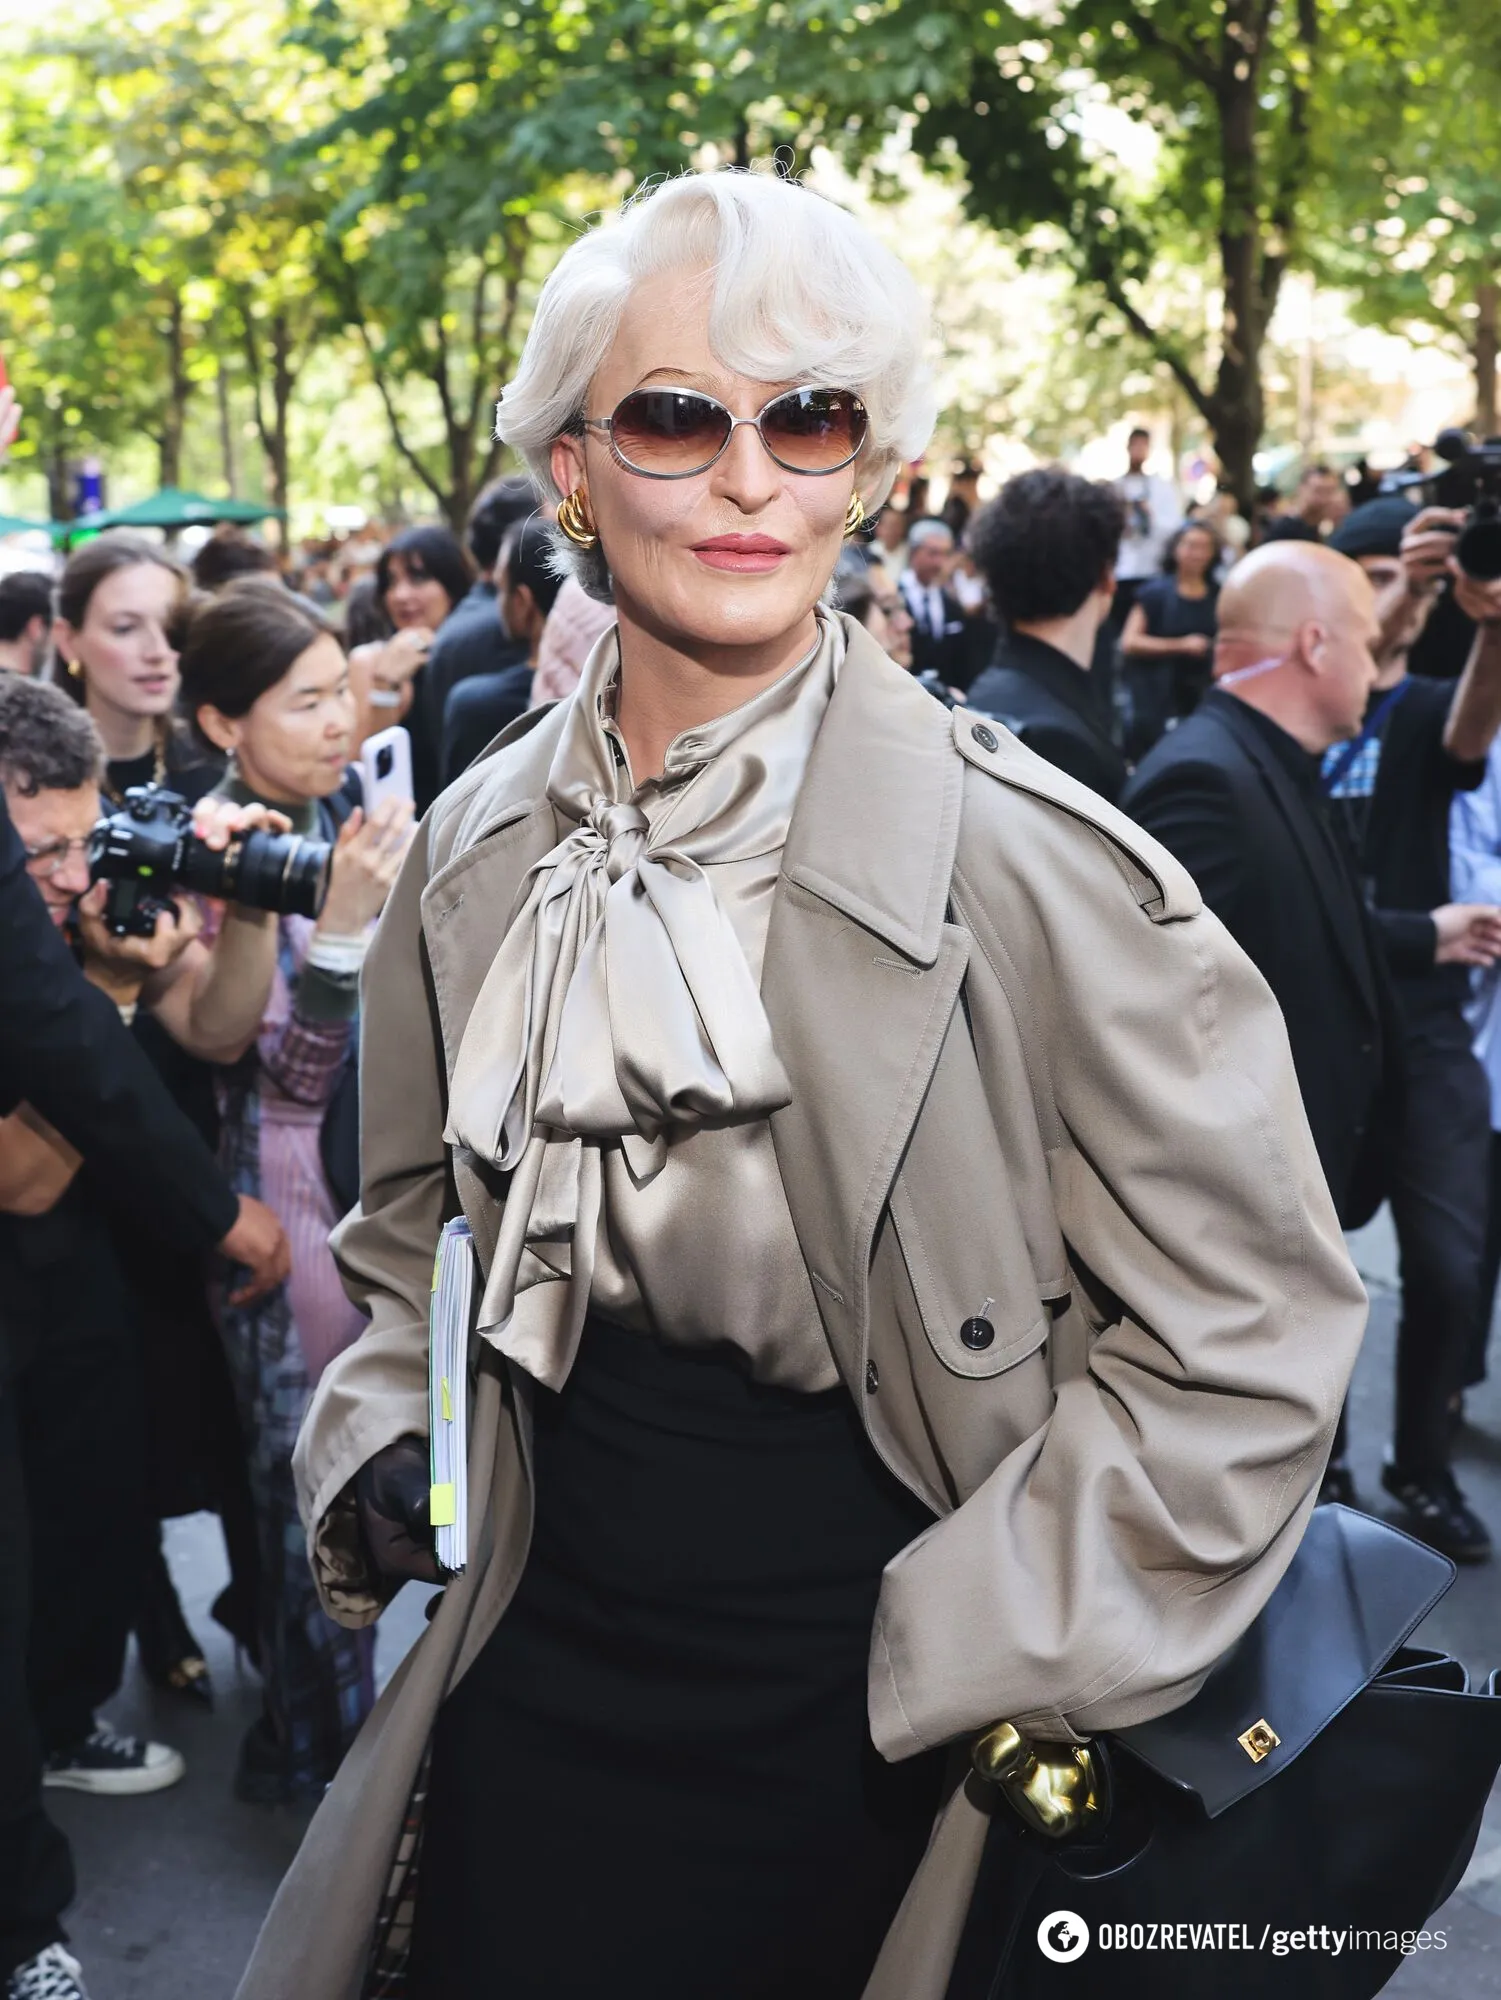 The Devil Wears Prada reborn: słynny wizażysta zamienia się w Meryl Streep na Paris Fashion Week, wyglądając zaskakująco podobnie